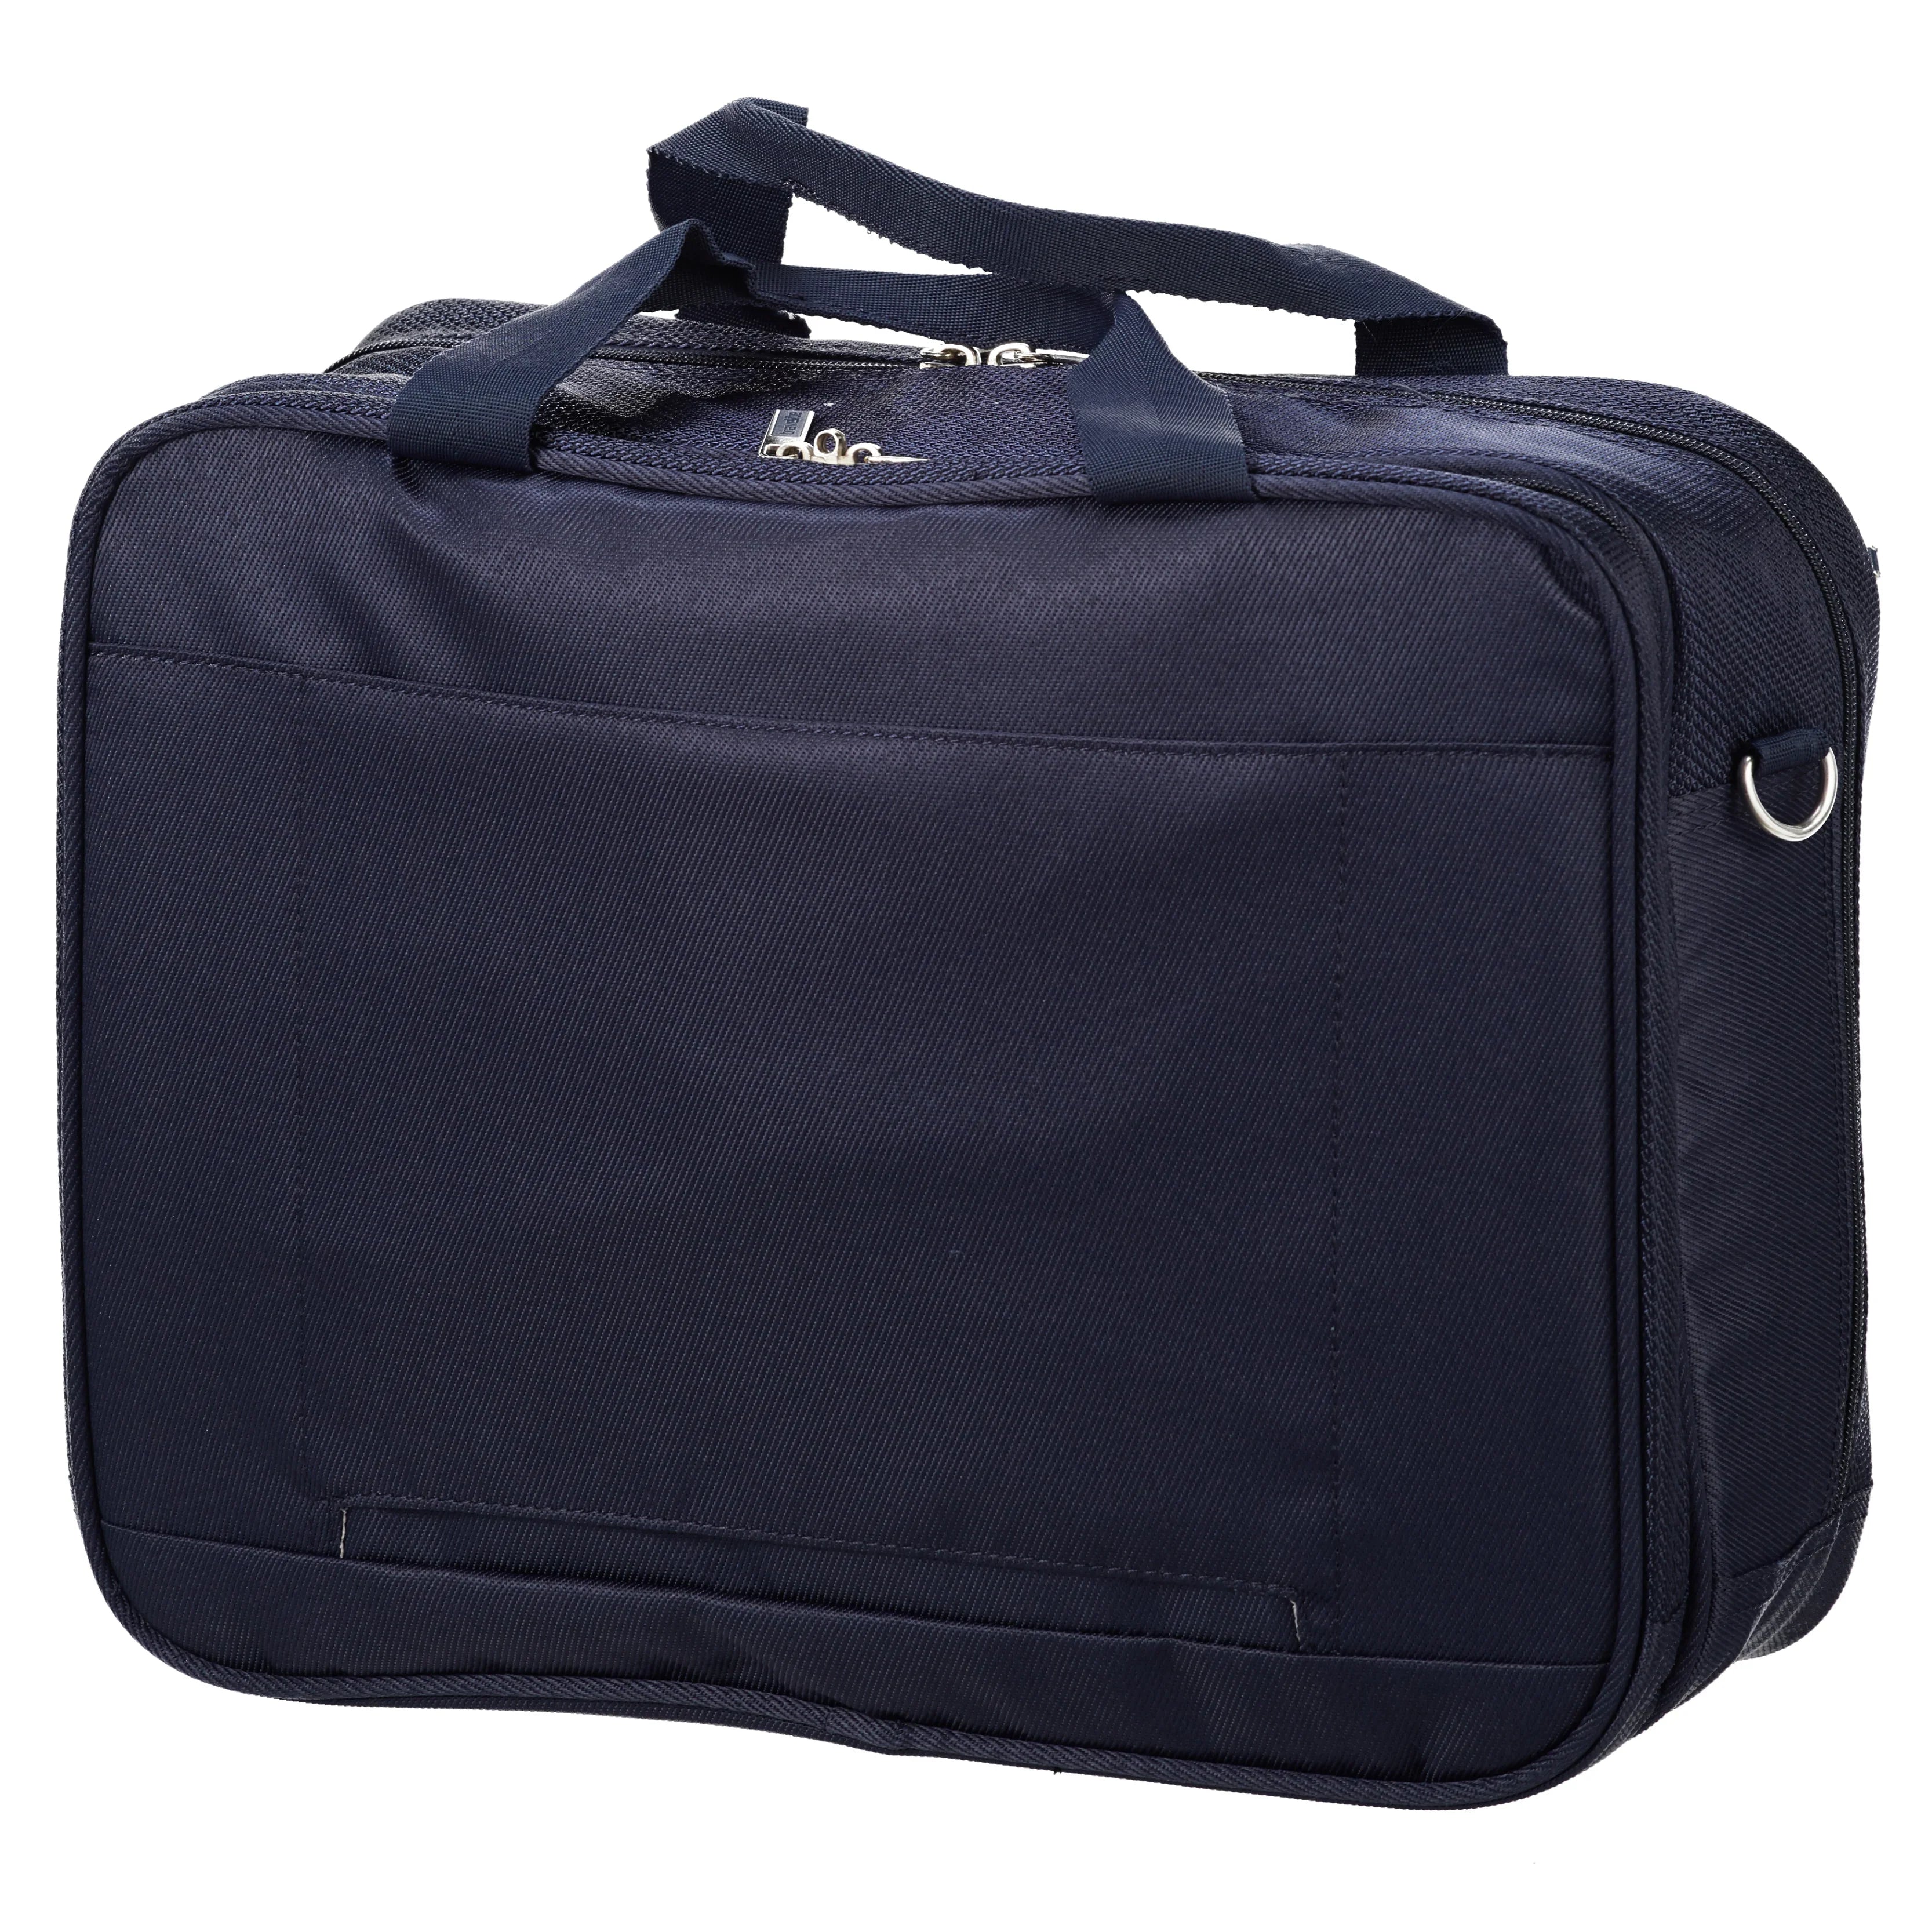 Travelite Miigo boarding bag 40 cm - Matcha